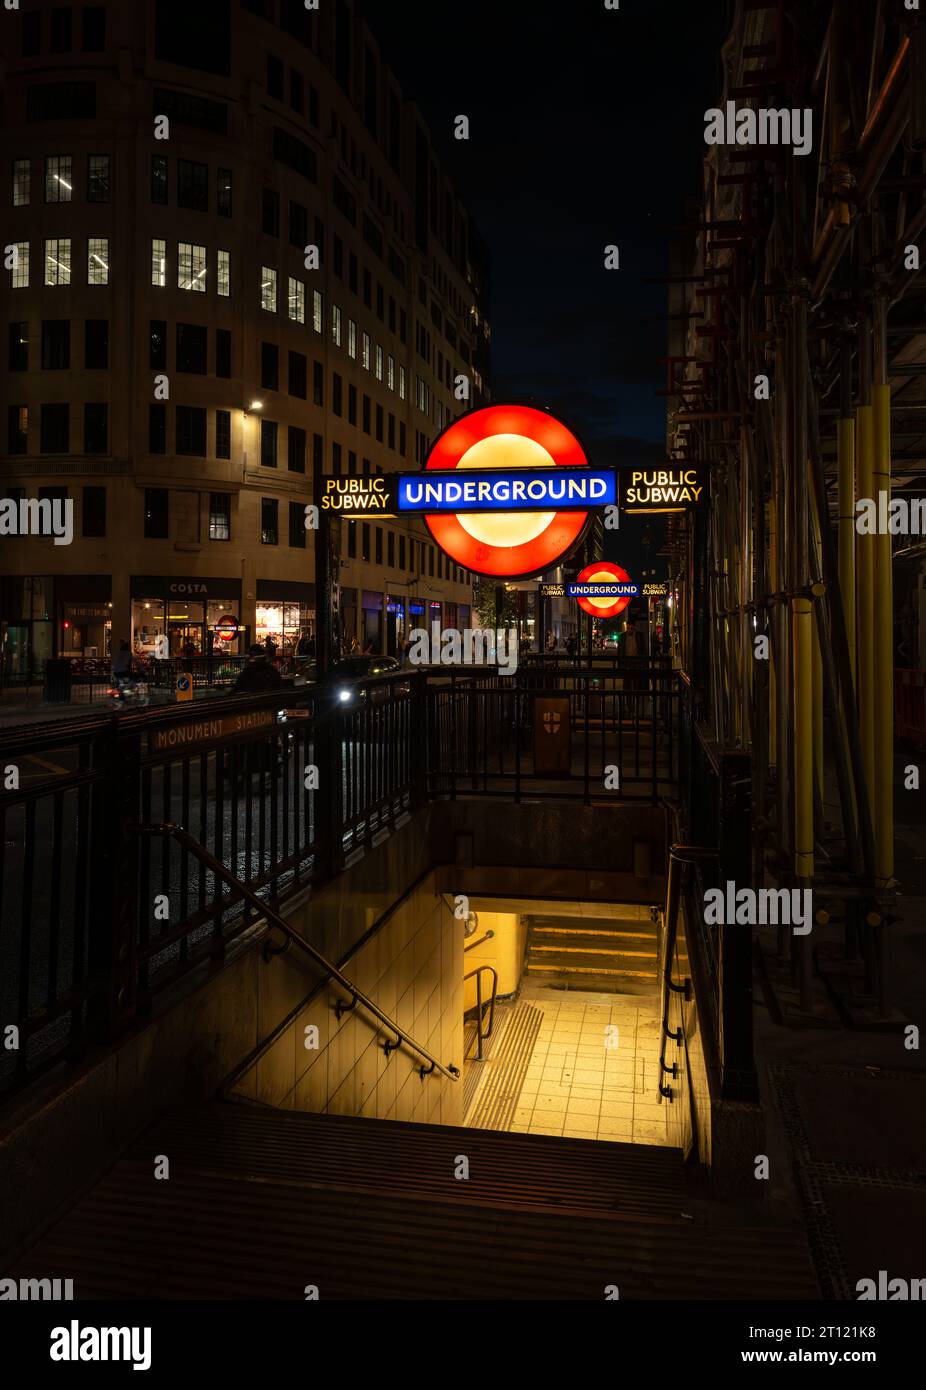 Londra, Regno Unito: Ingresso alla stazione della metropolitana Monument di notte con il cartello illuminato della metropolitana di Londra. Foto Stock